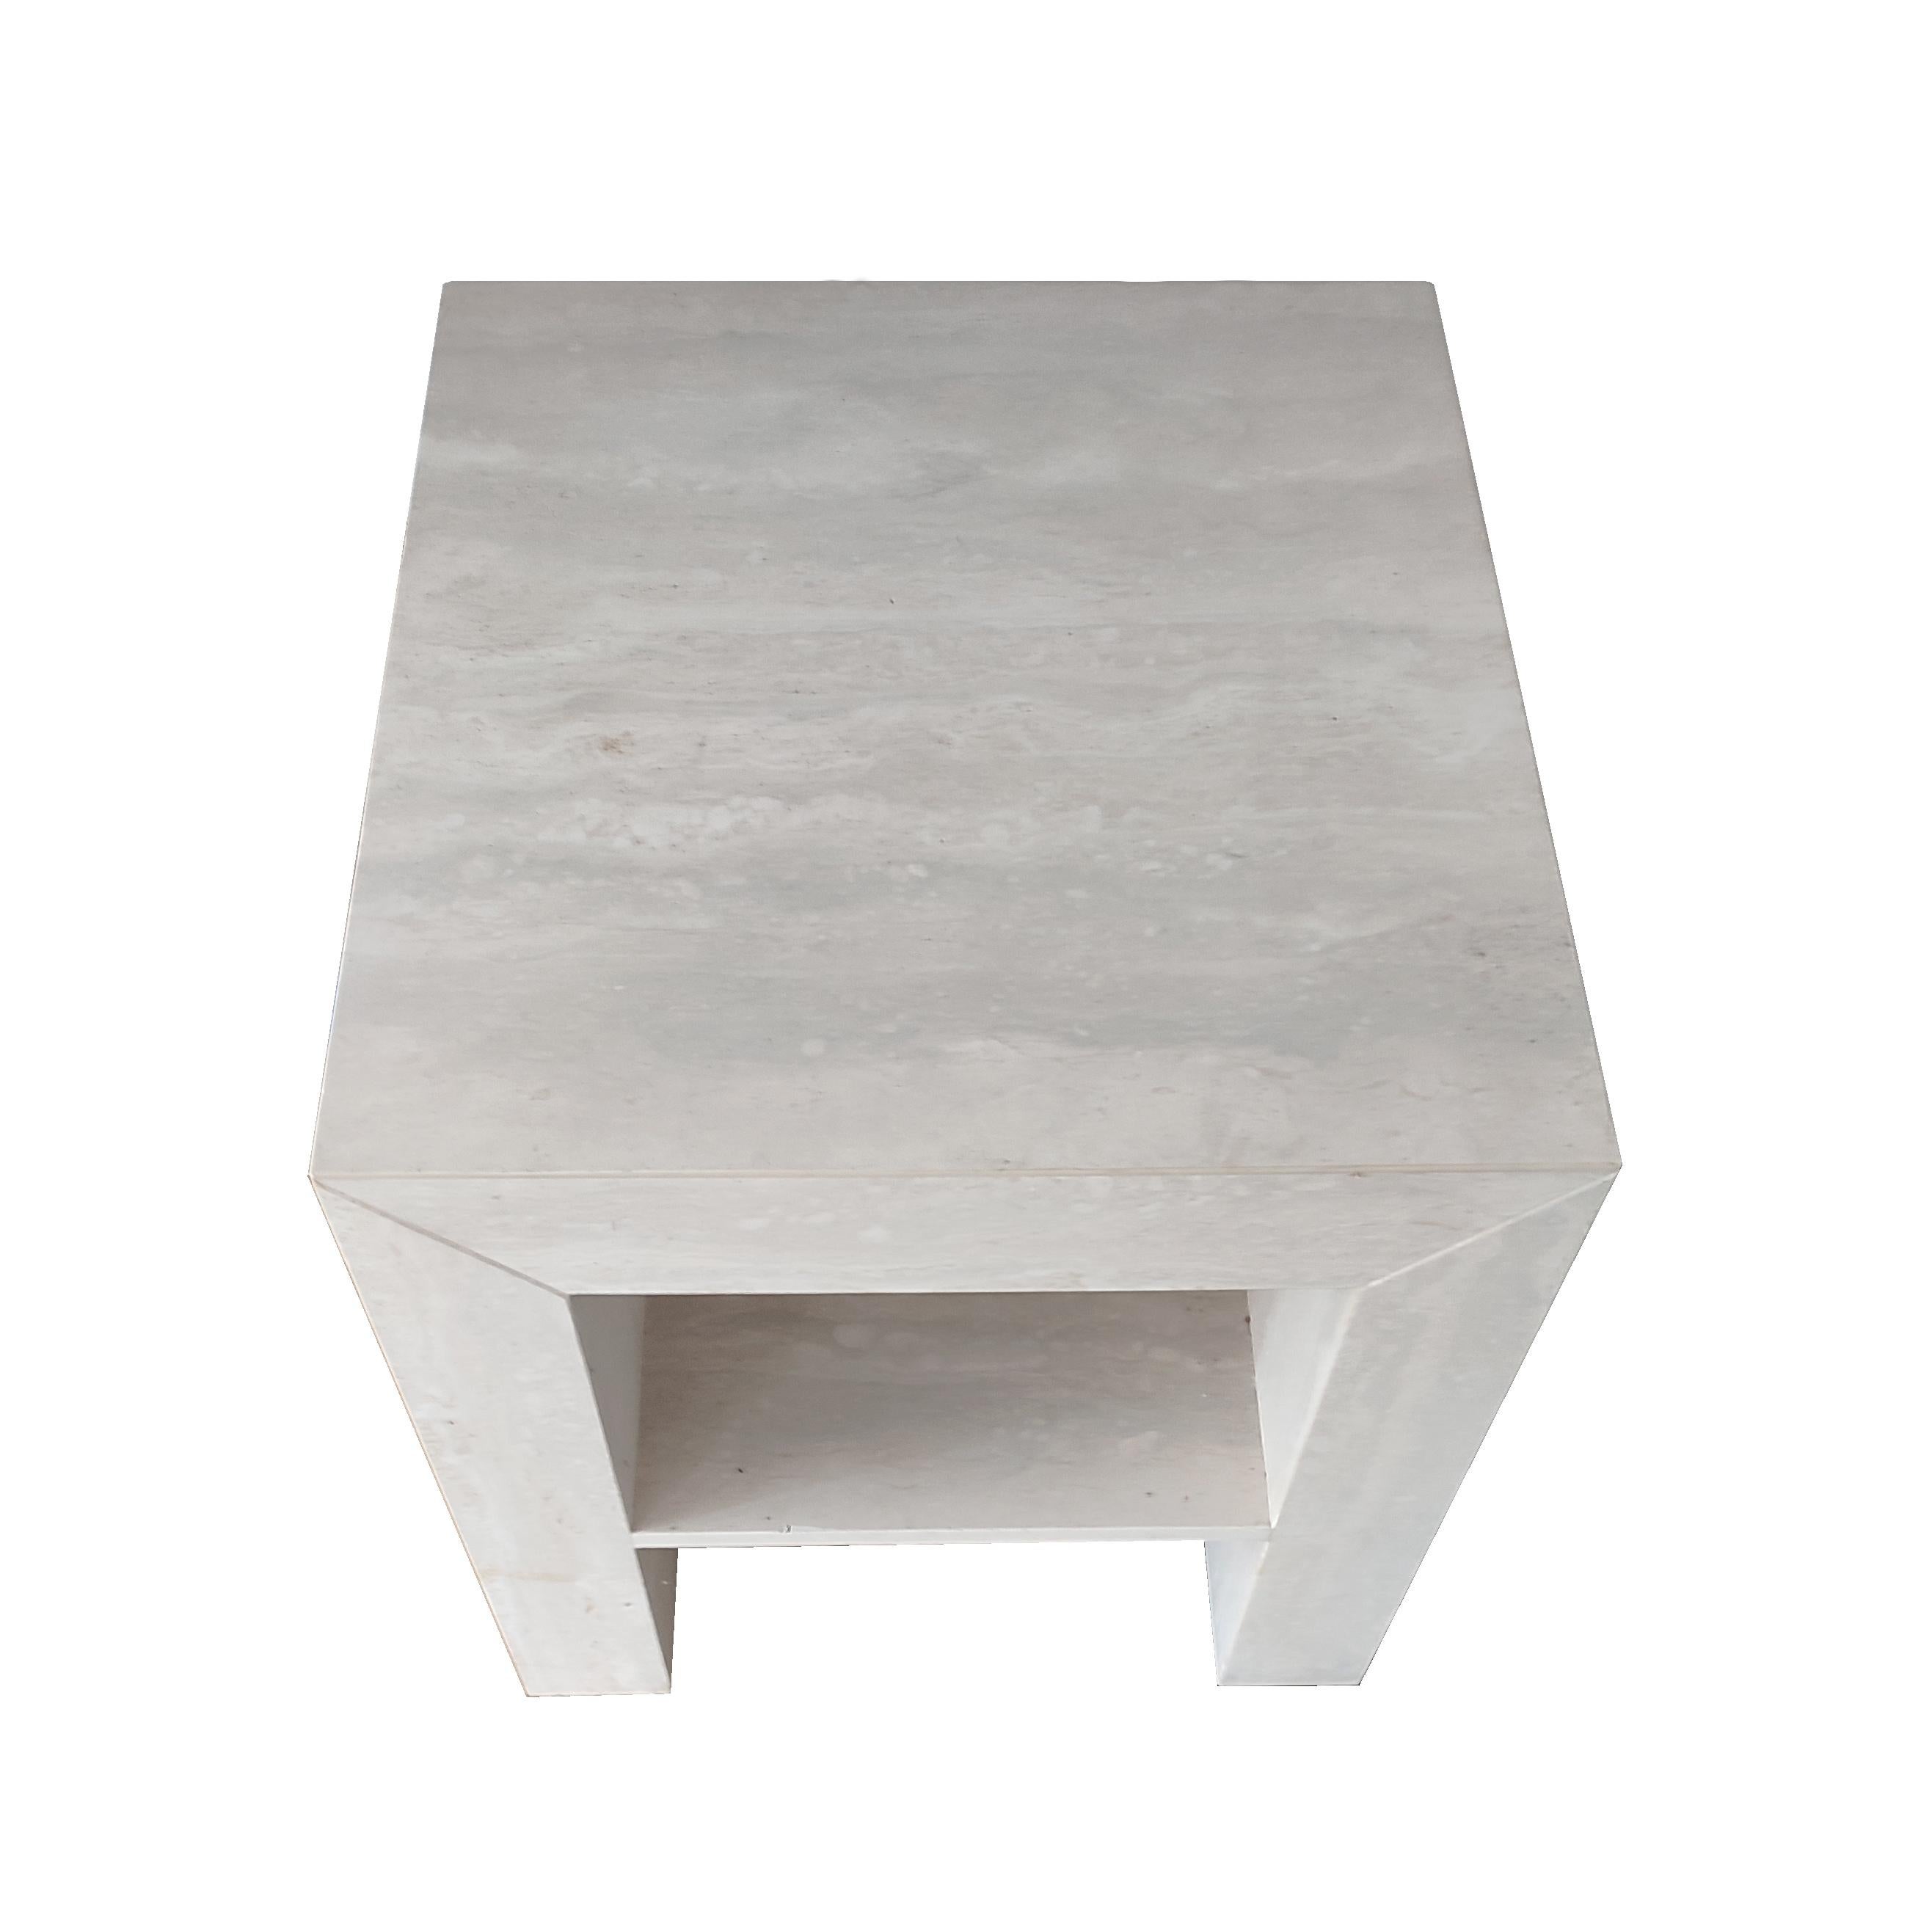 BAO Side Travertine Marble Design Table by Meddel Spain Joaquín Moll En stock
Cette table d'appoint design en marbre travertin est une pièce régulière, au design simple et très fonctionnel. Sa structure présente un 